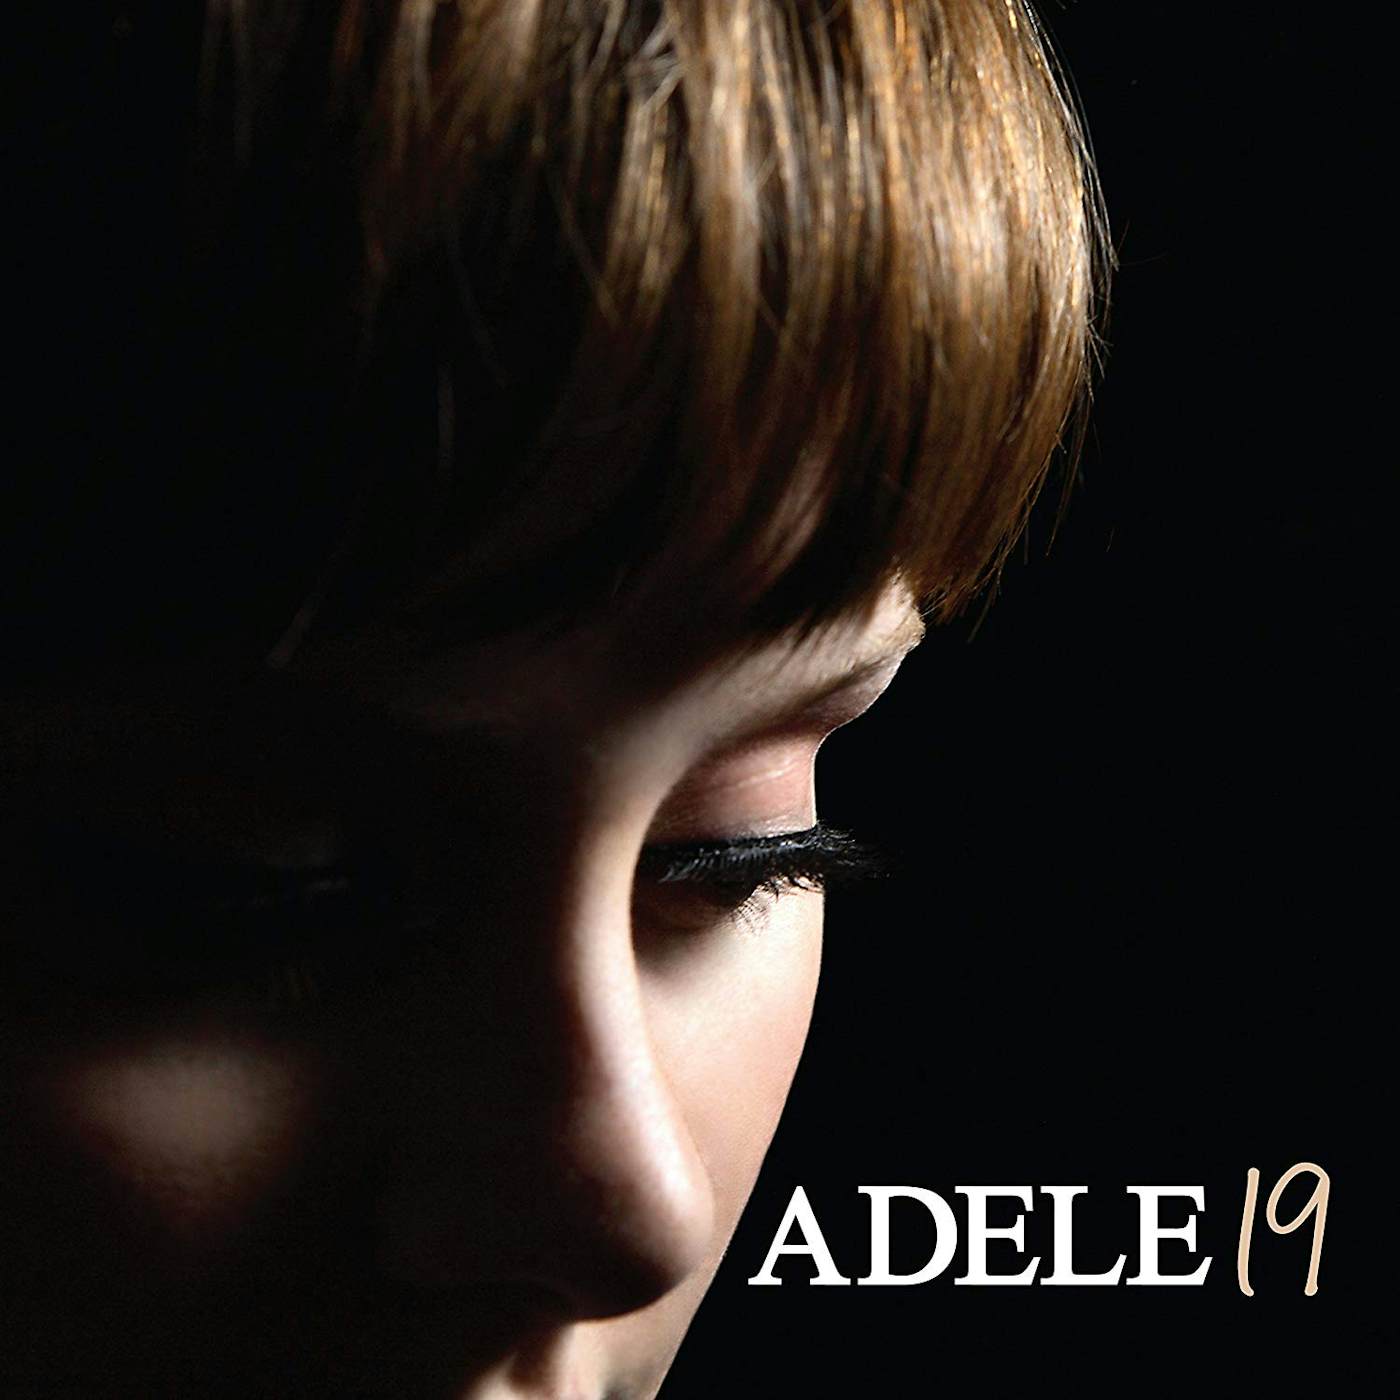 Adele 19 Vinyl Record